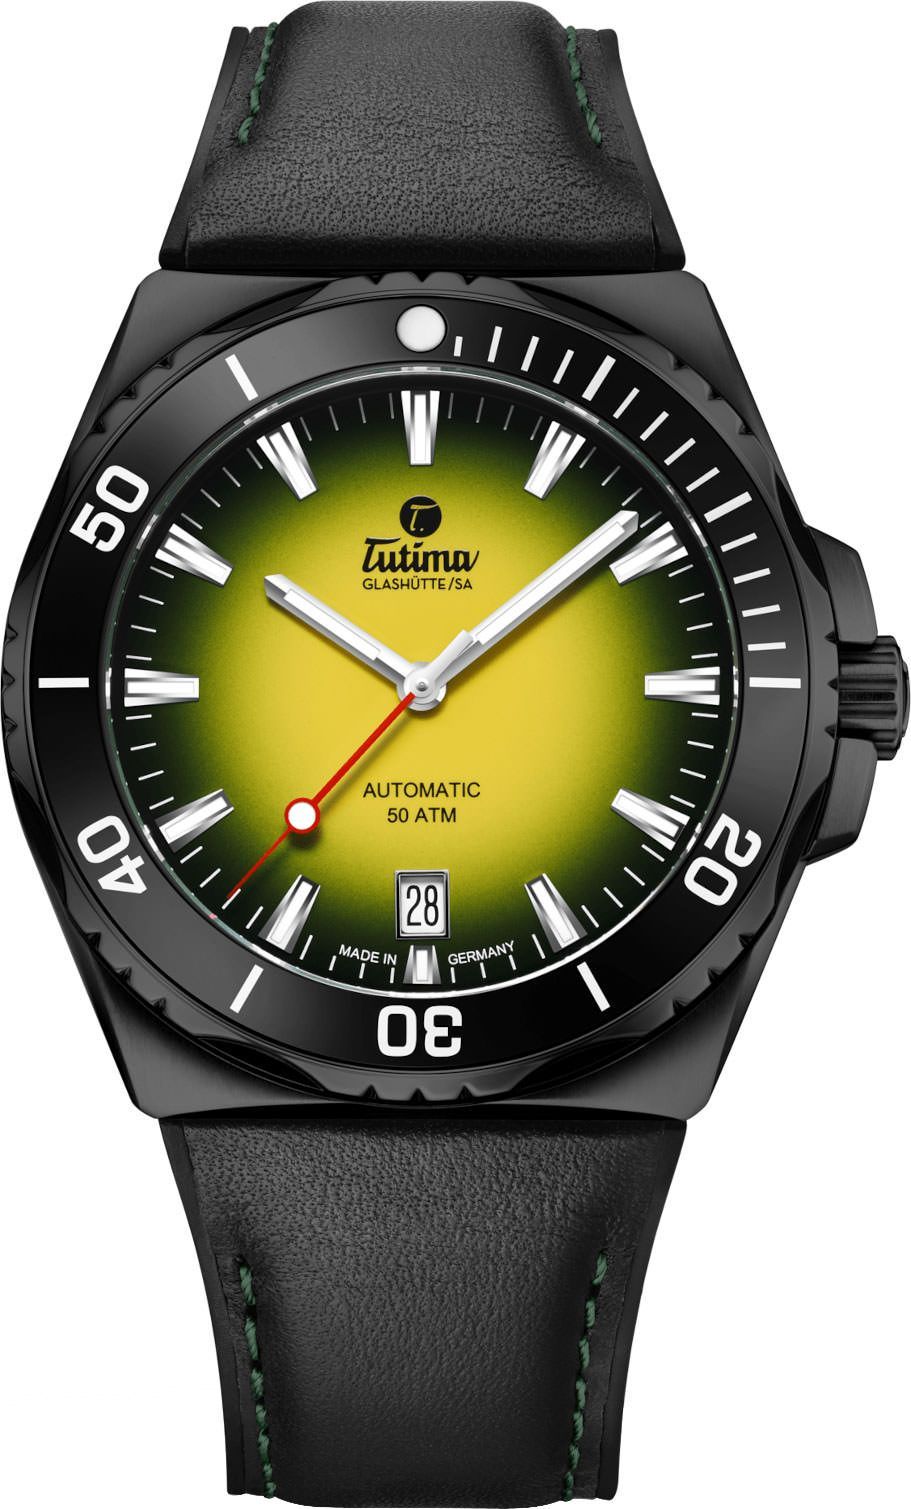 Tutima Glashütte Seven Seas S 40 mm Watch in Yellow Dial For Men - 1